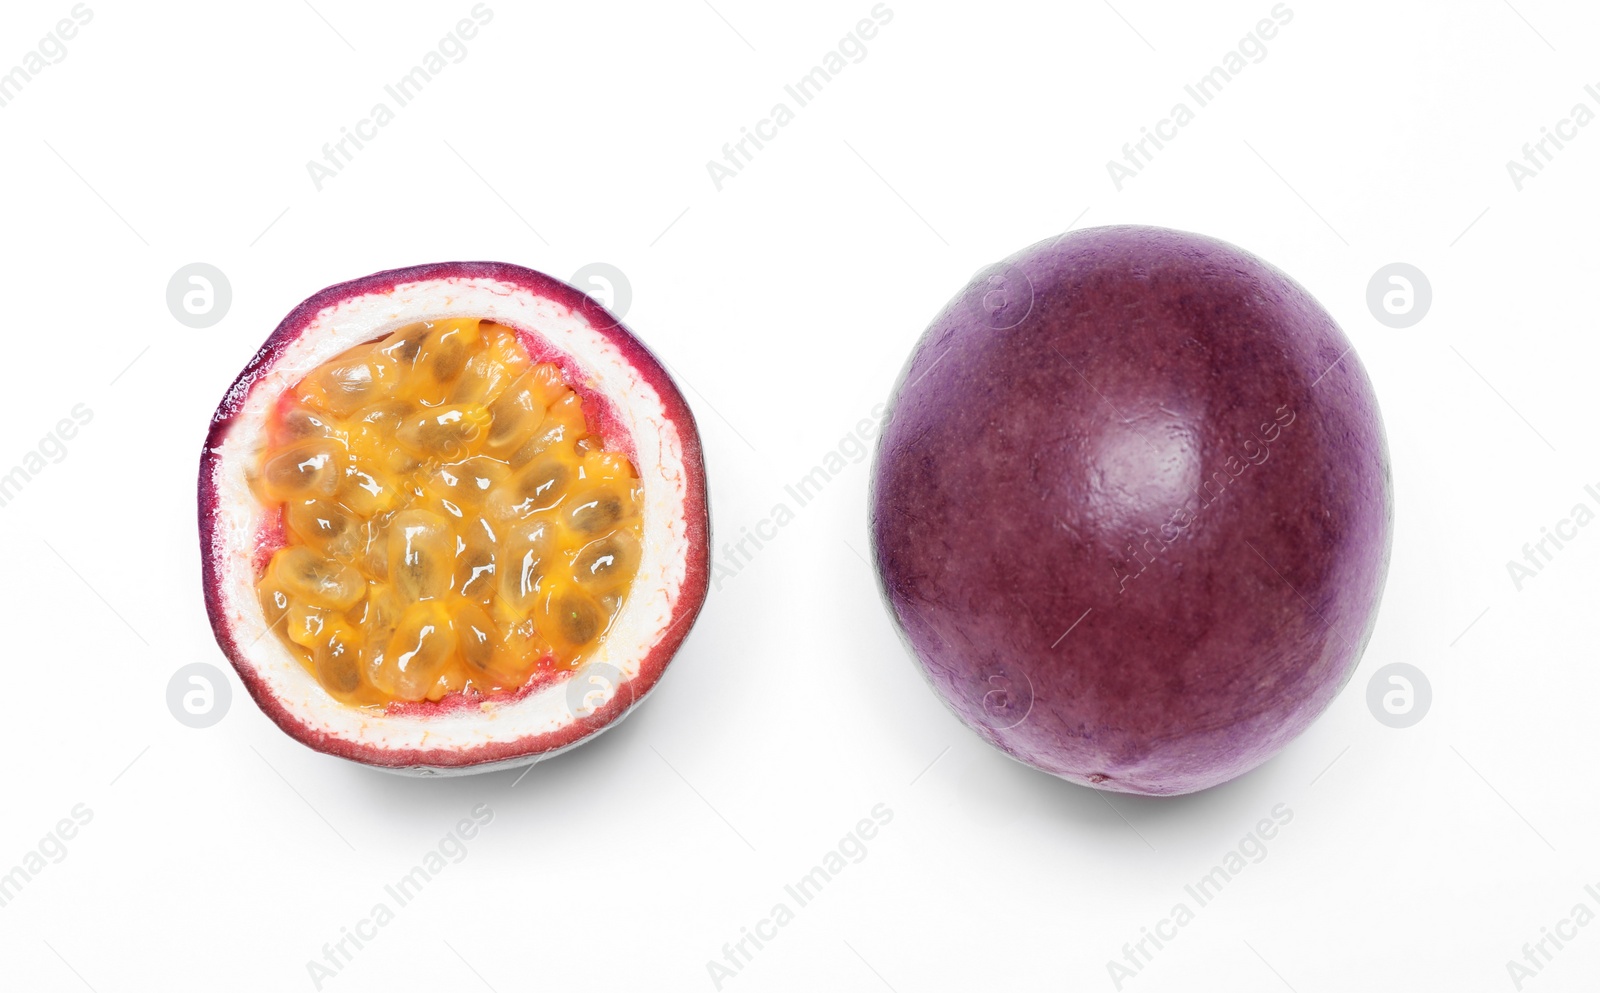 Photo of Fresh ripe passion fruits (maracuyas) on white background, flat lay